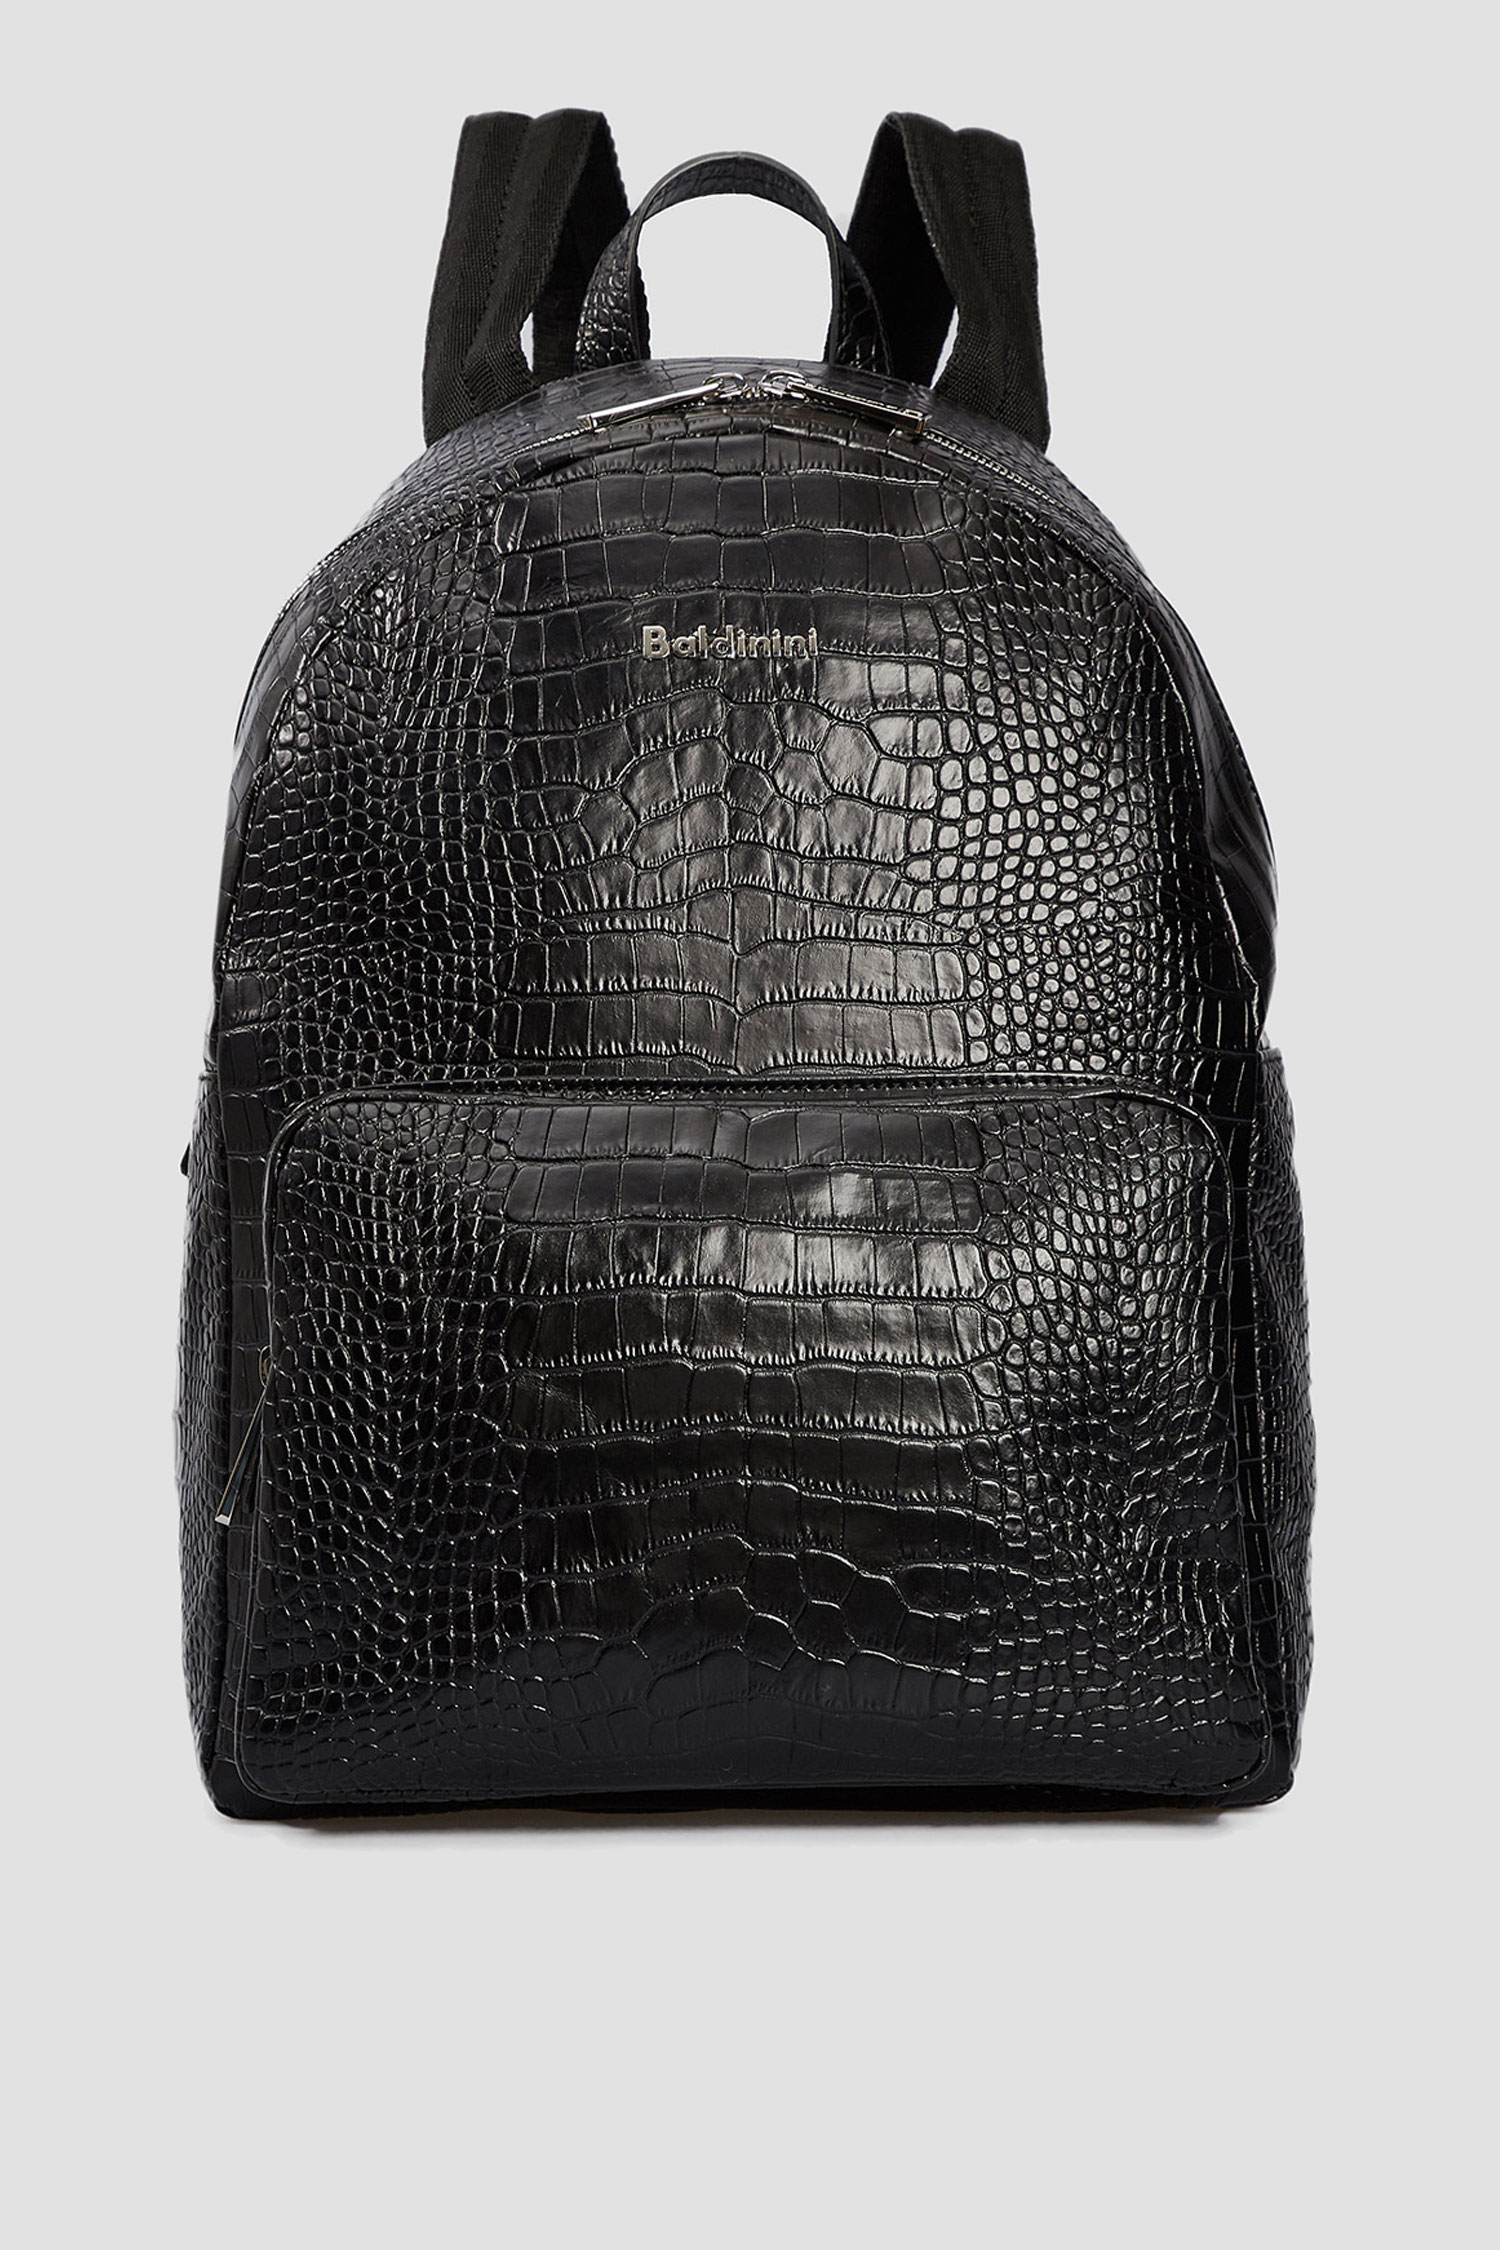 Мужской черный кожаный рюкзак Baldinini C2B003COCC;0000